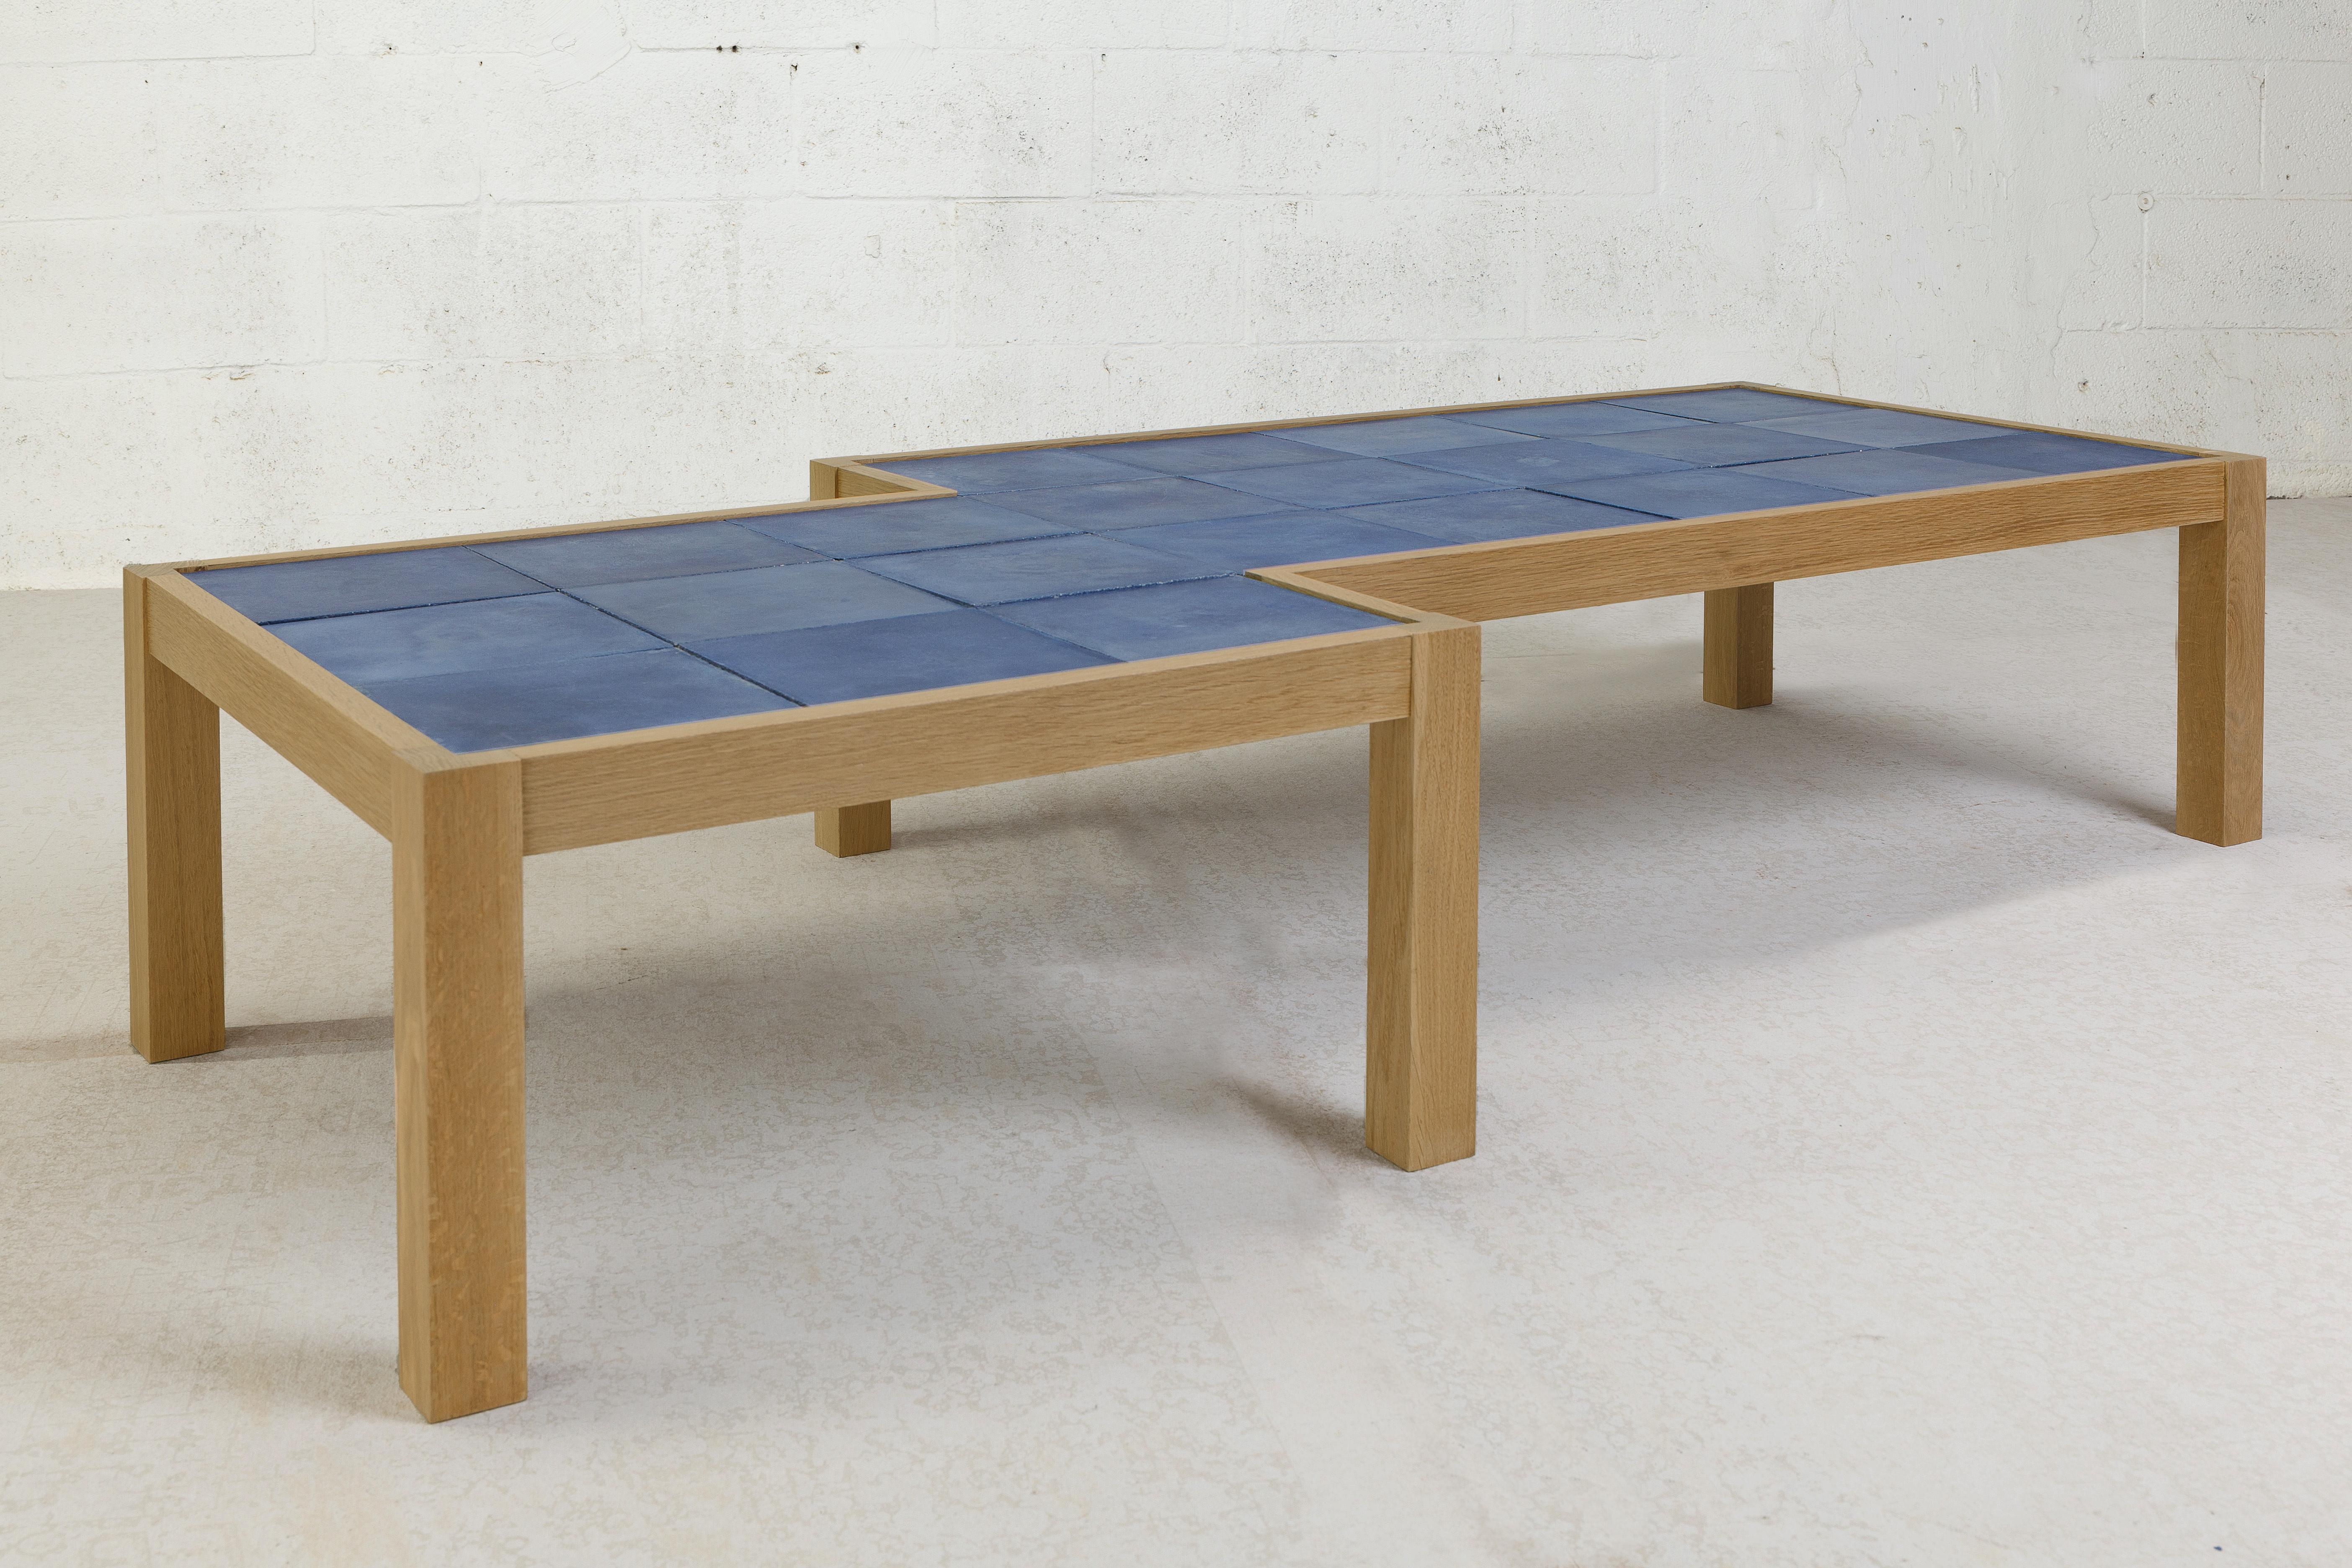 La nouvelle table Blue Pixel Shift en édition limitée est un design contemporain chaleureux composé de chêne blanc massif et de carreaux hydrauliques bleus spécialisés. Le cadre et les pieds sont en chêne blanc massif avec une finition naturelle qui